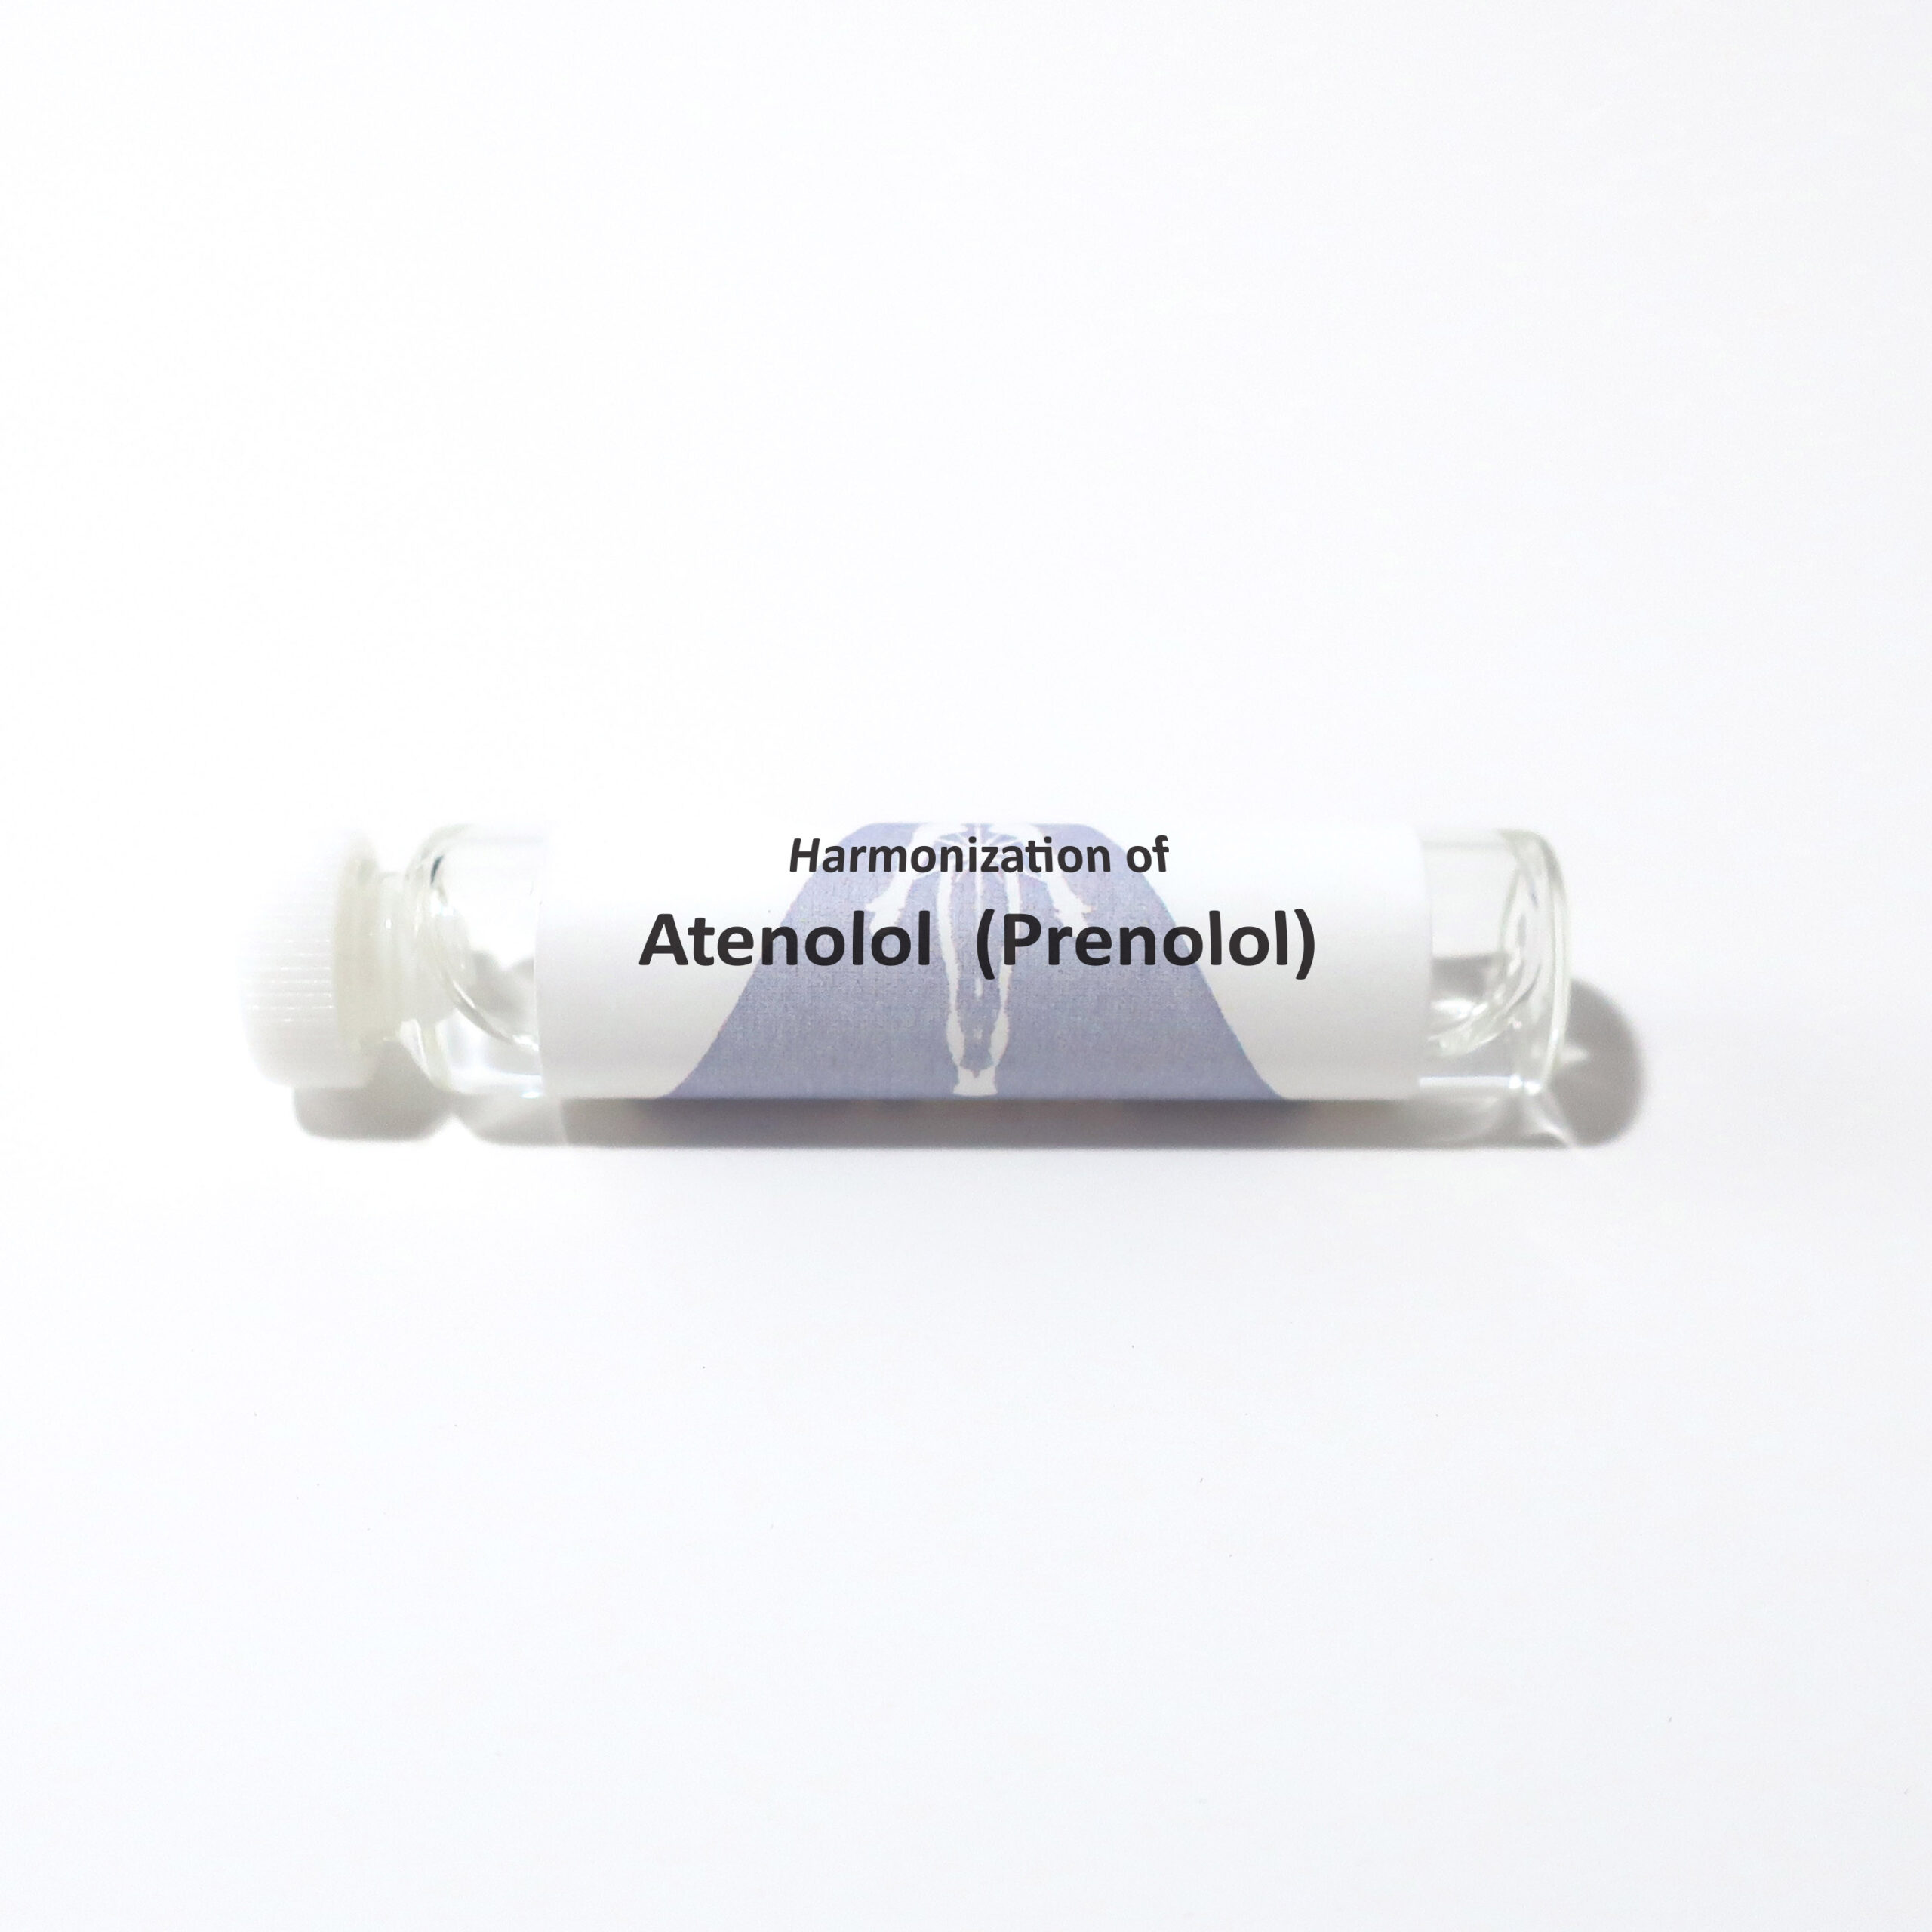 Atenolol (Prenolol)